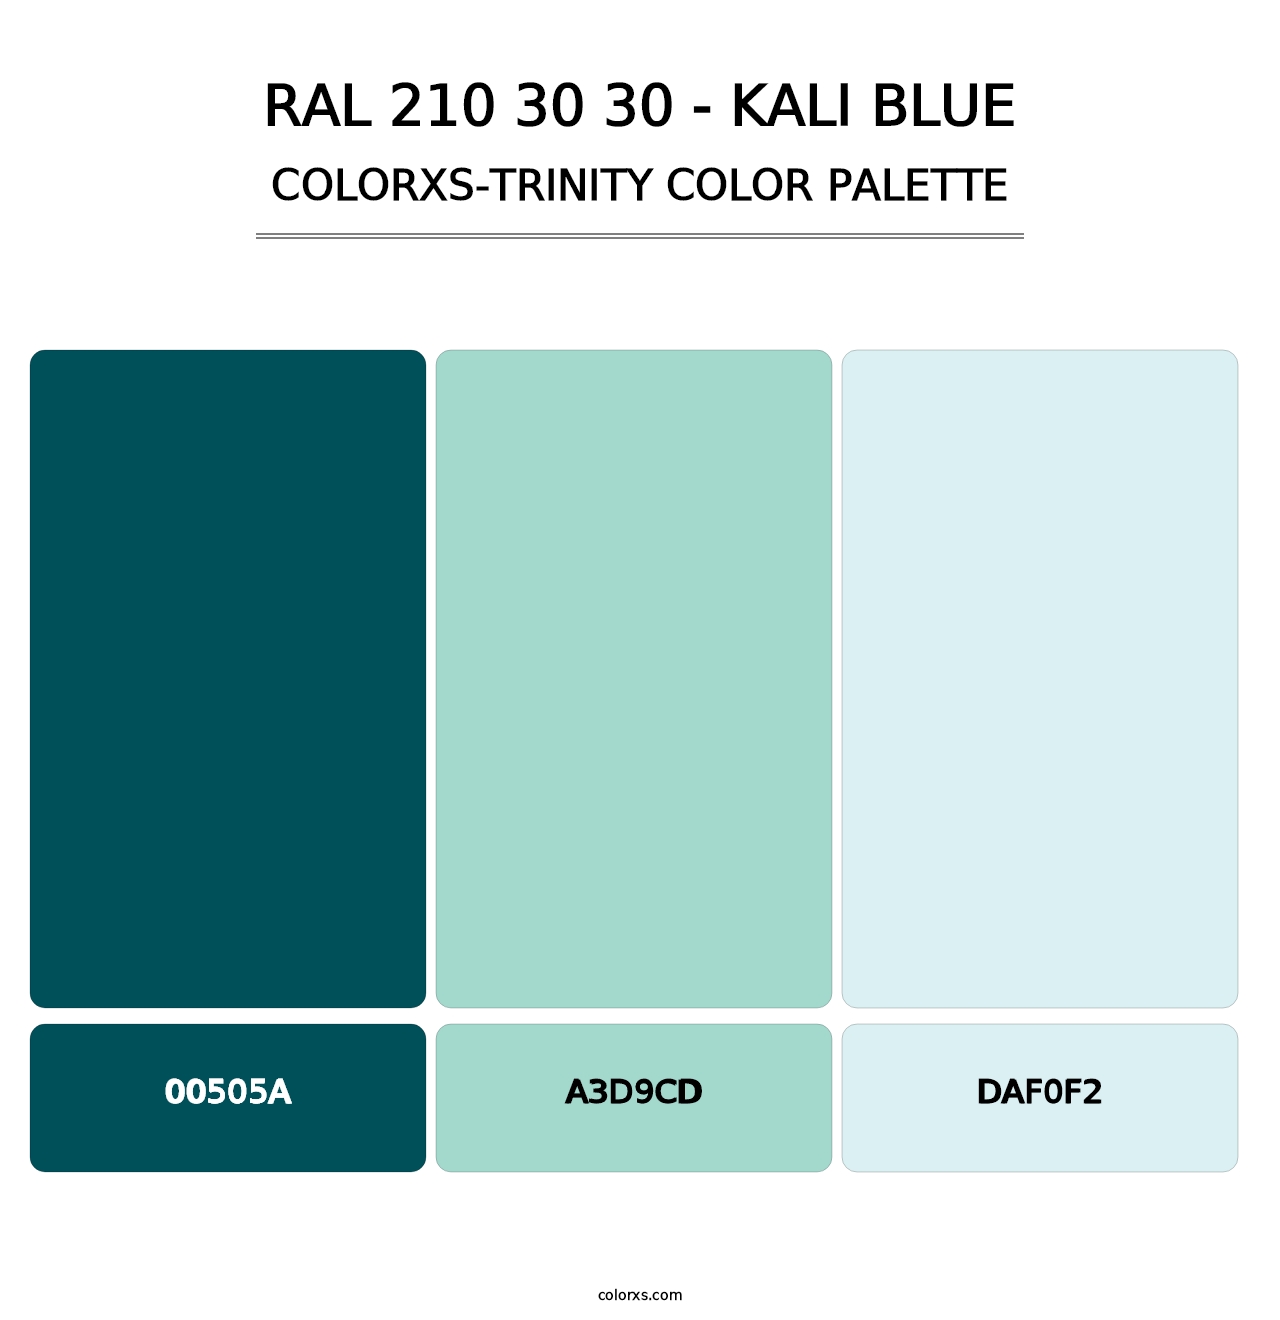 RAL 210 30 30 - Kali Blue - Colorxs Trinity Palette